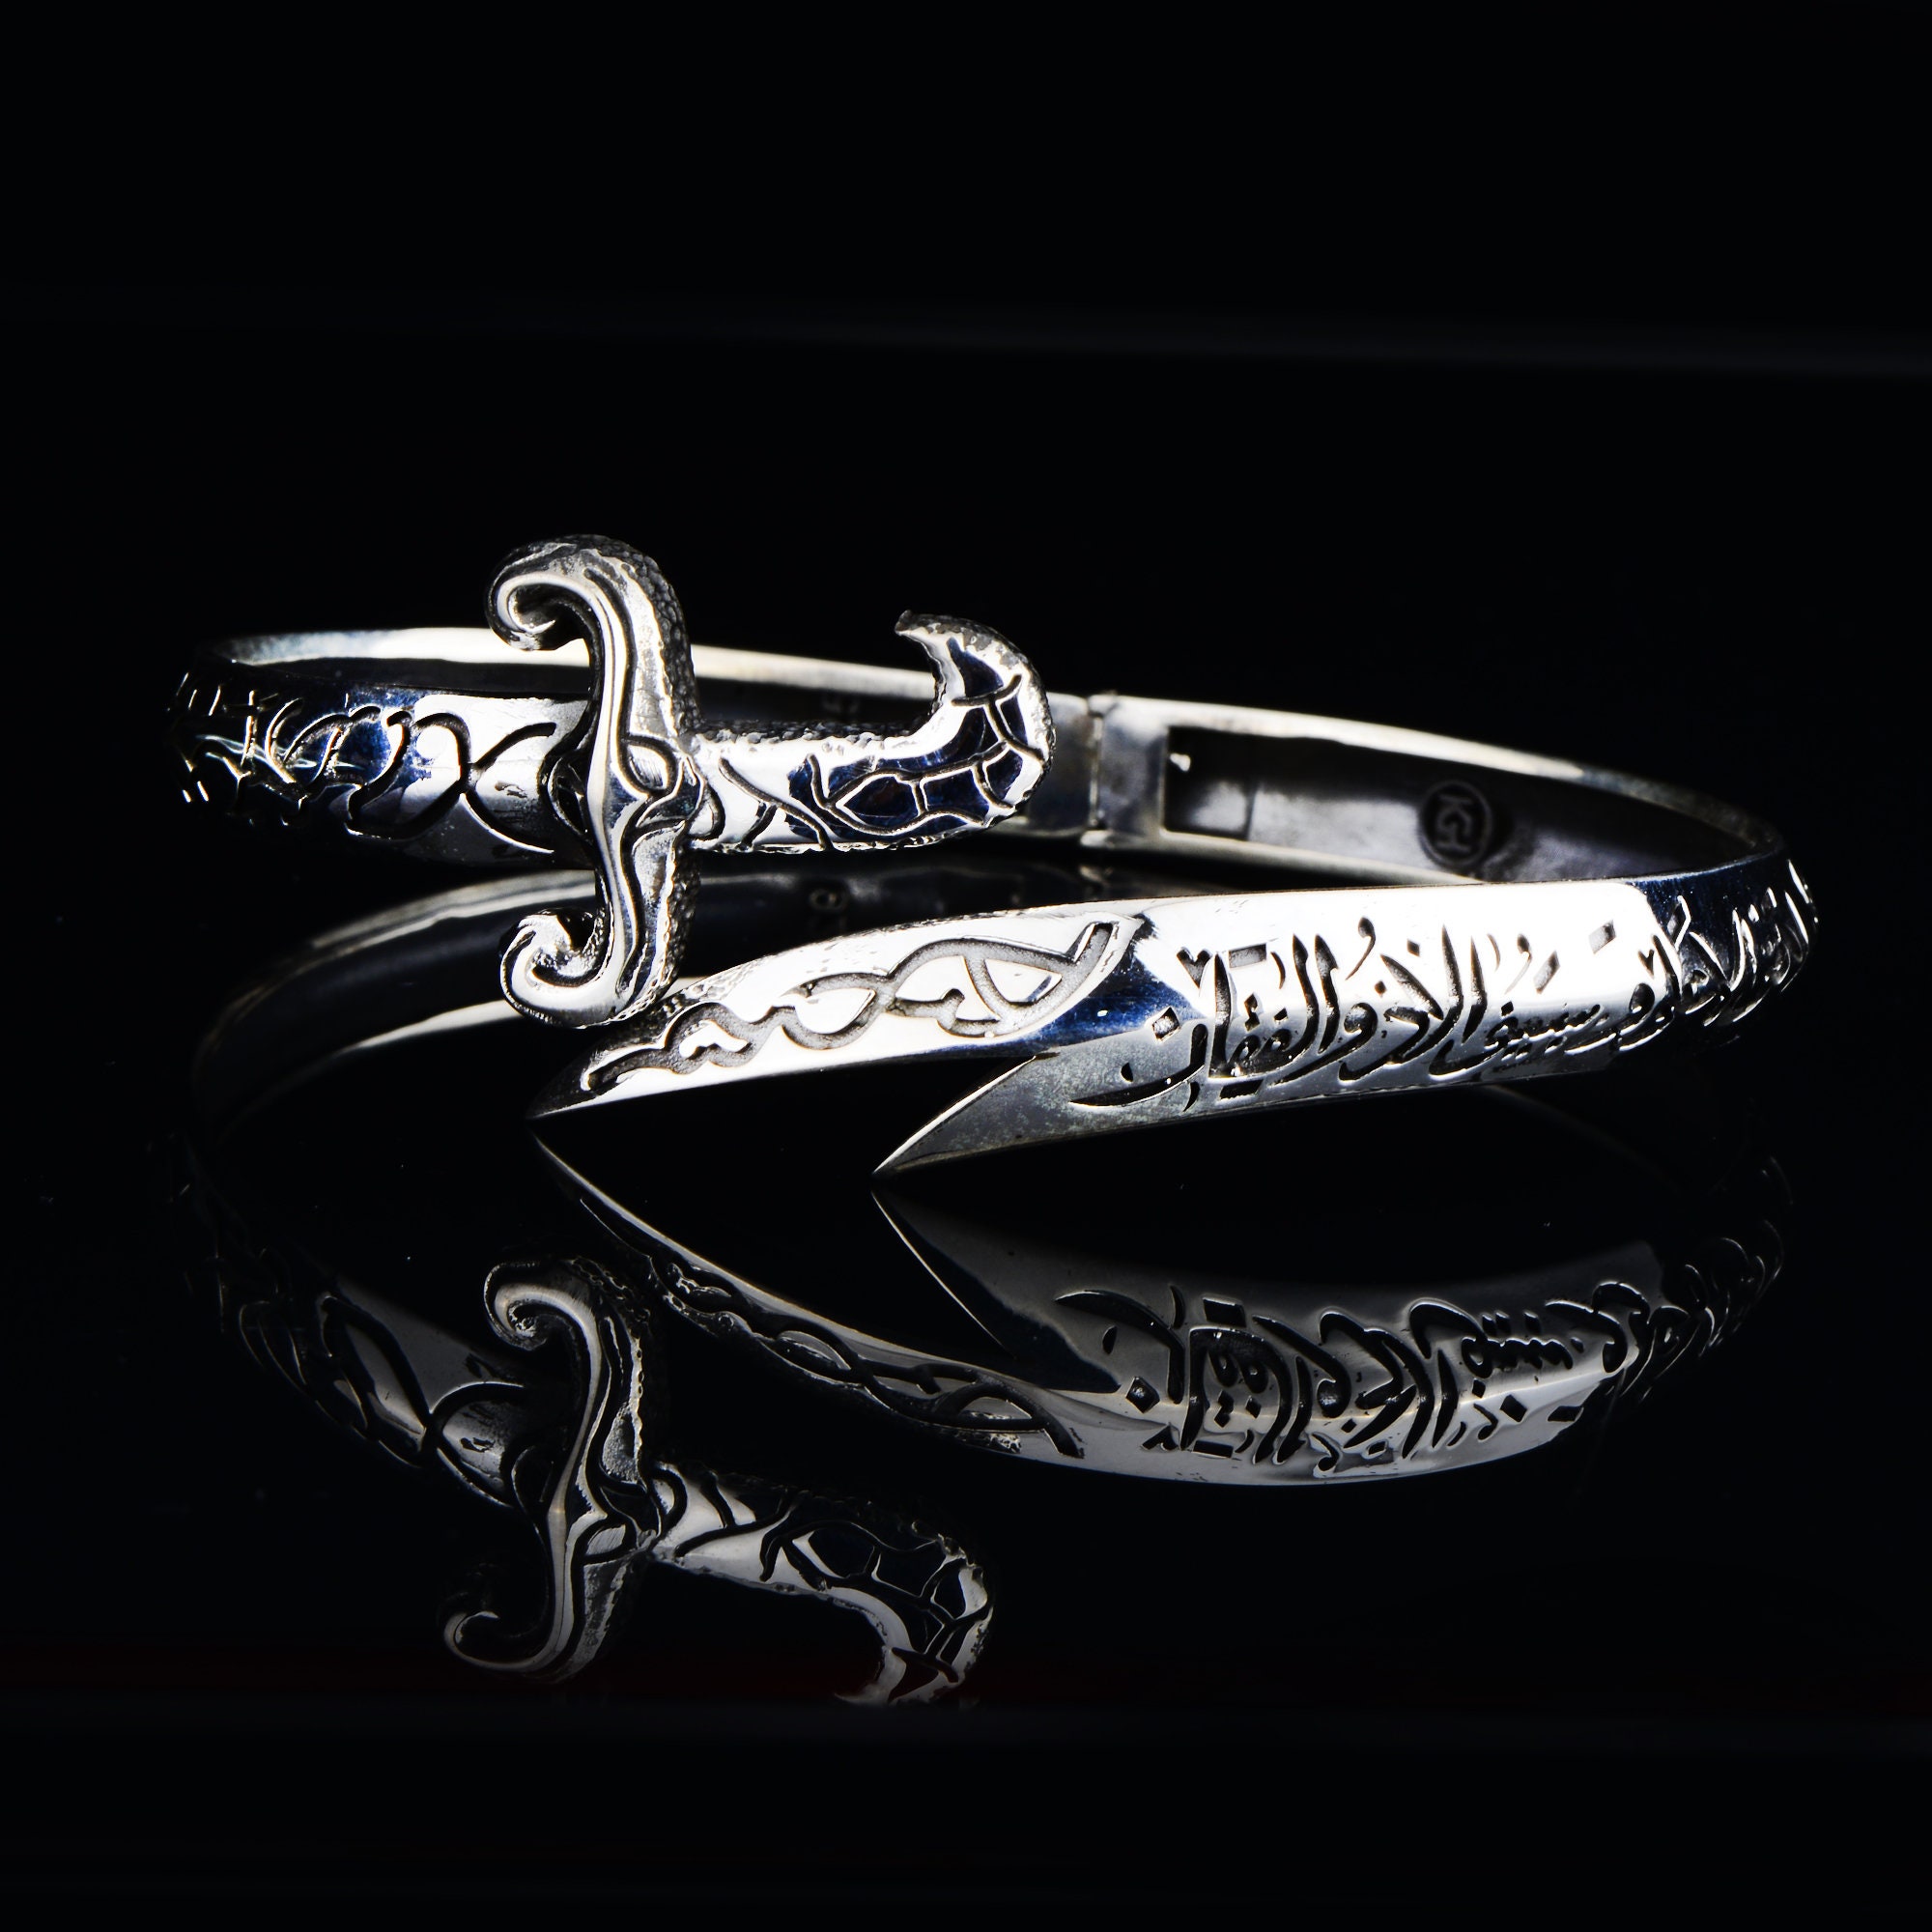 Enameled men's bracelet with sword Zulfiqar engraving